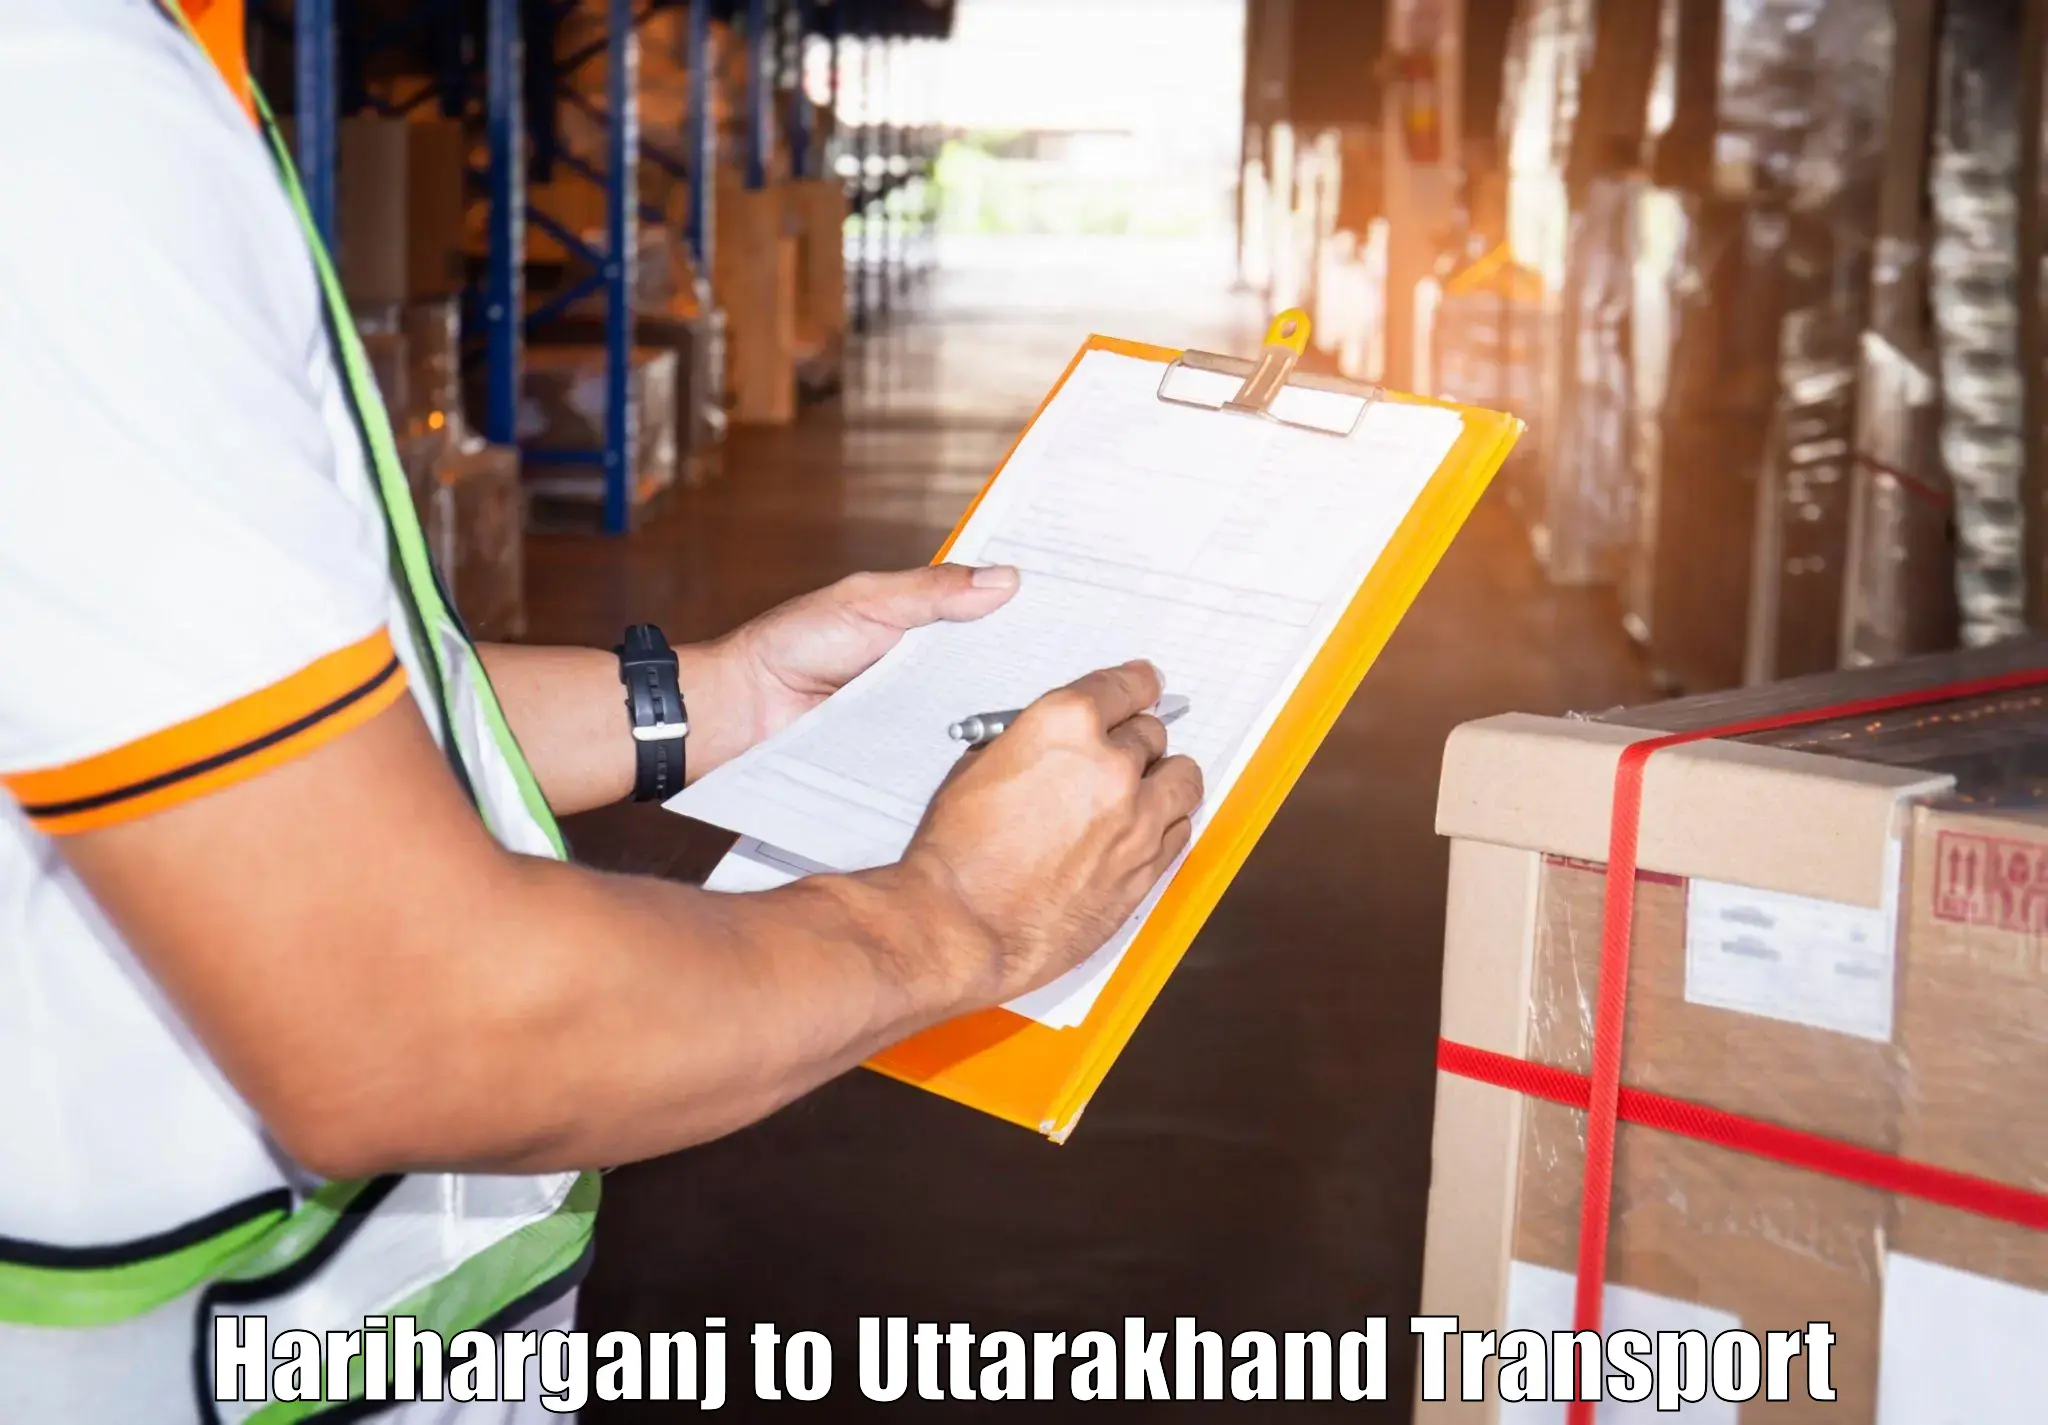 Daily transport service Hariharganj to IIT Roorkee